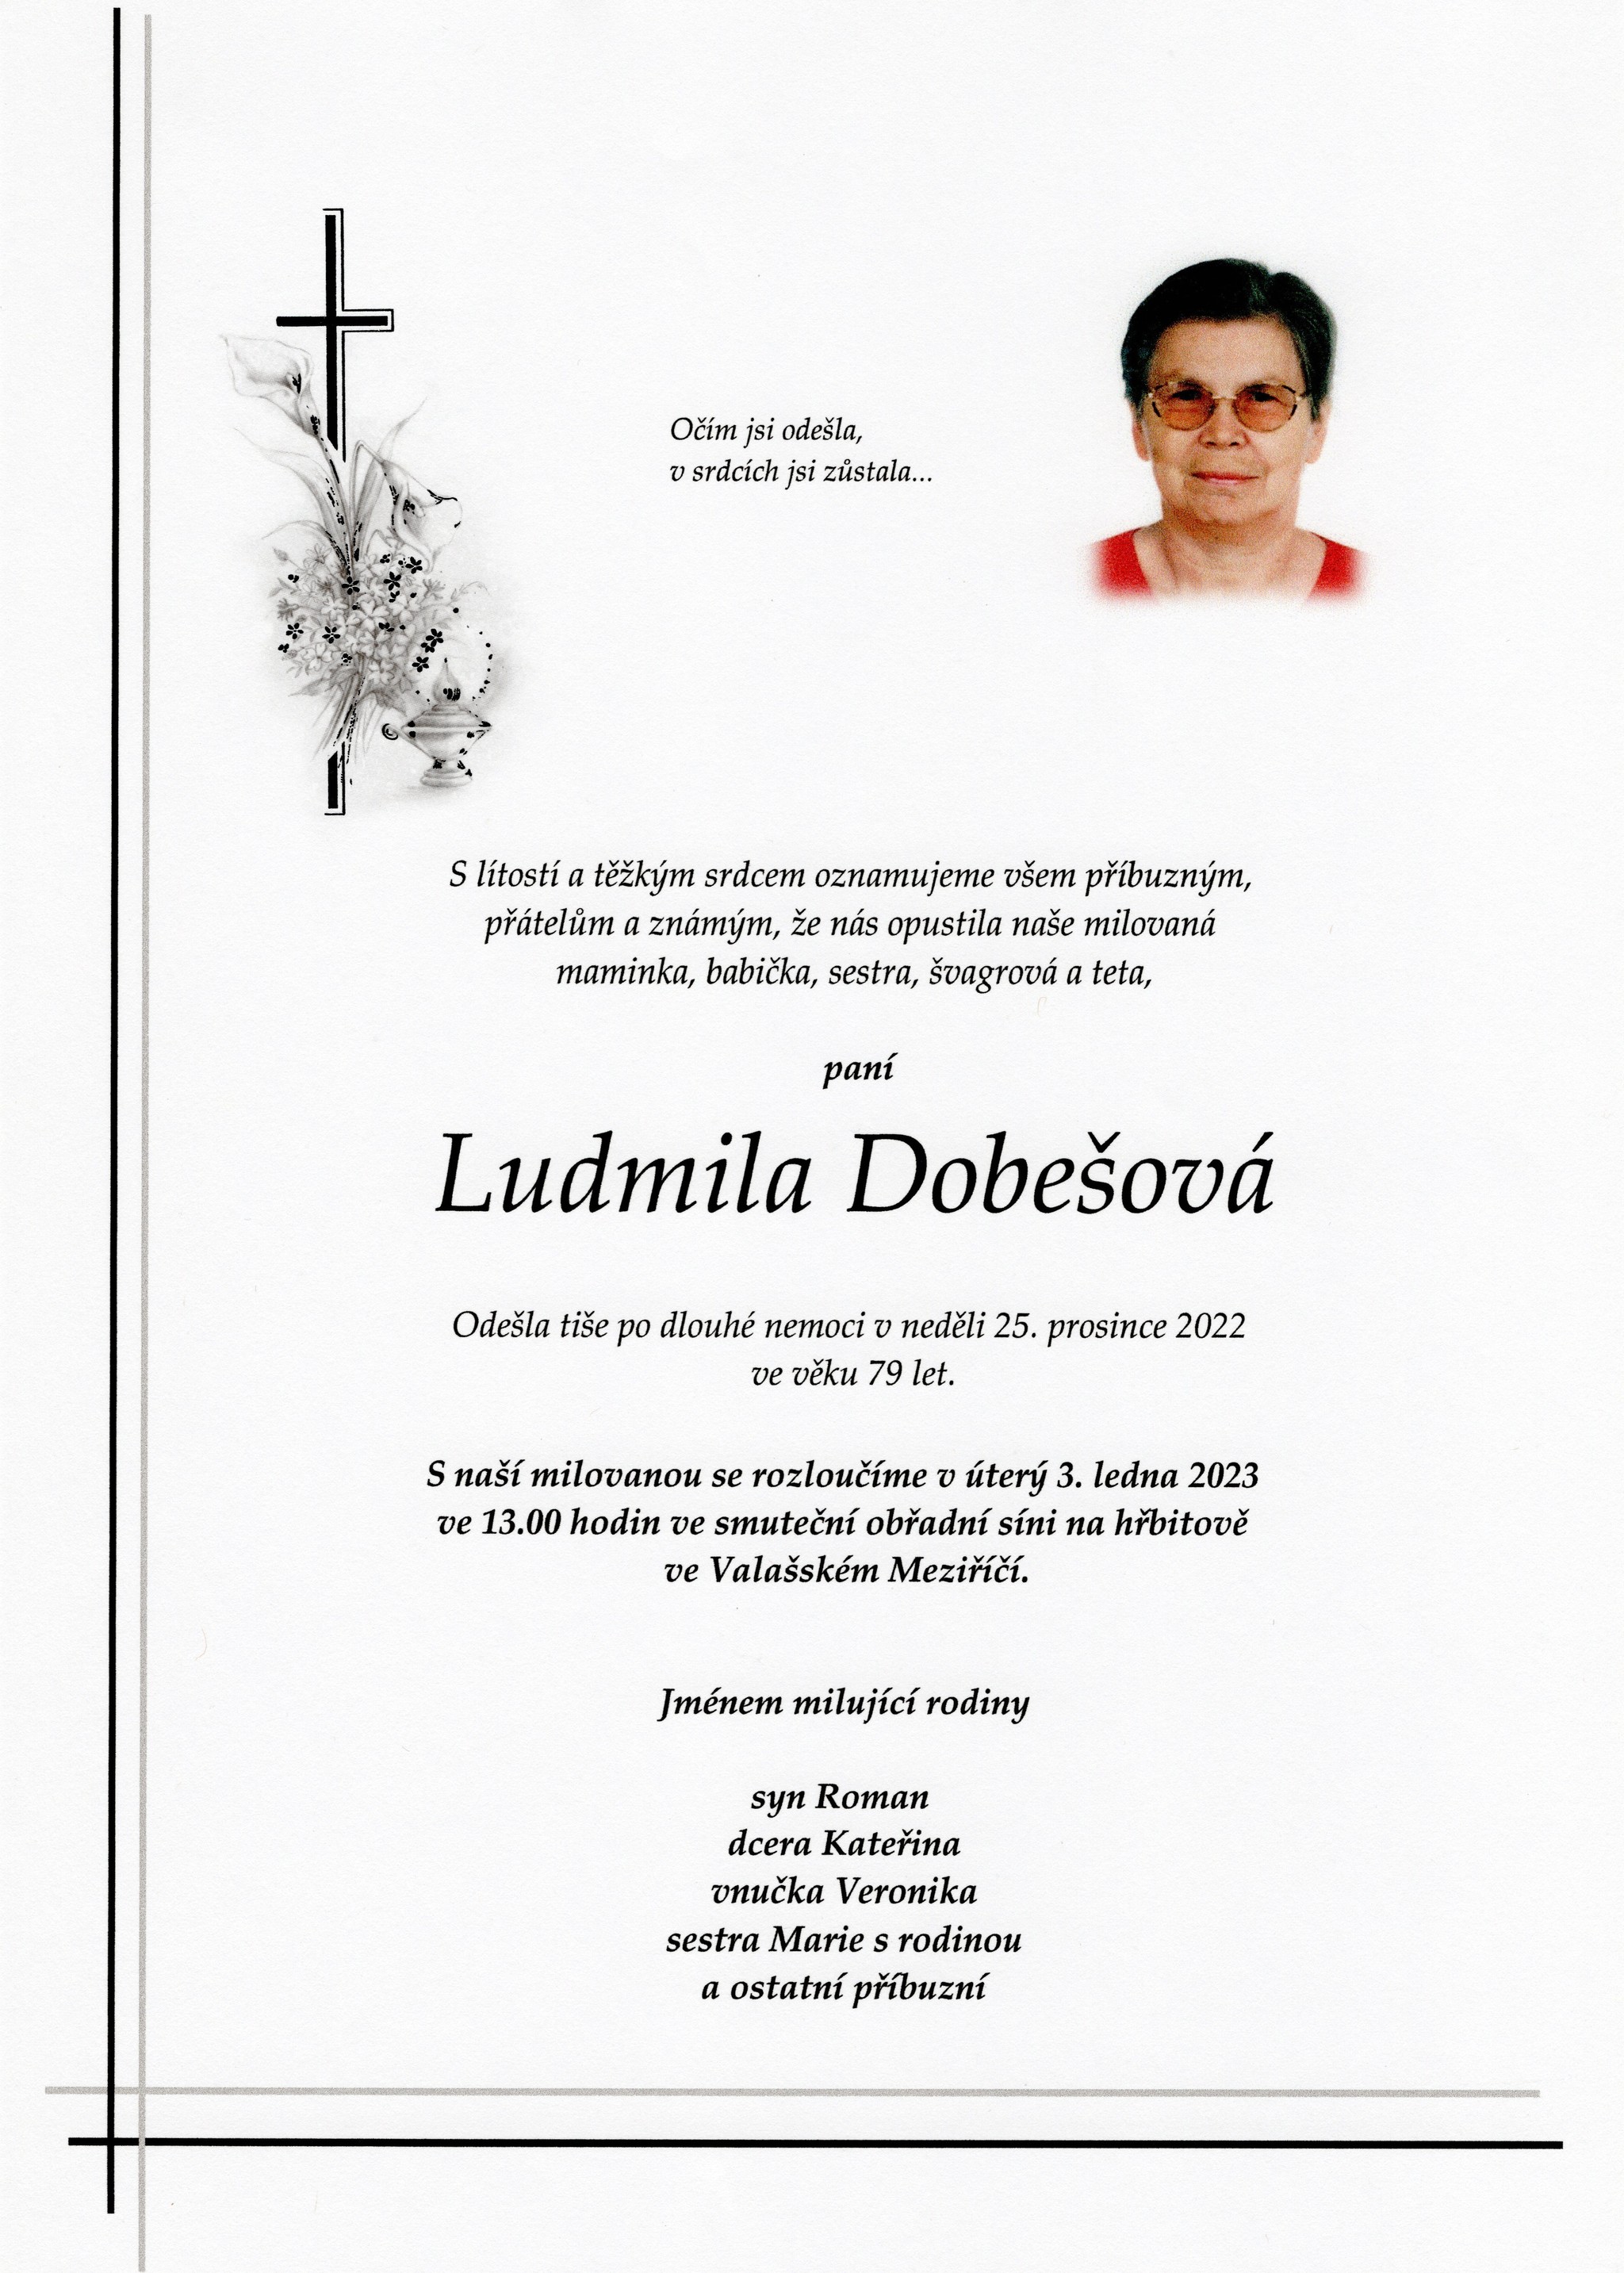 Ludmila Dobešová